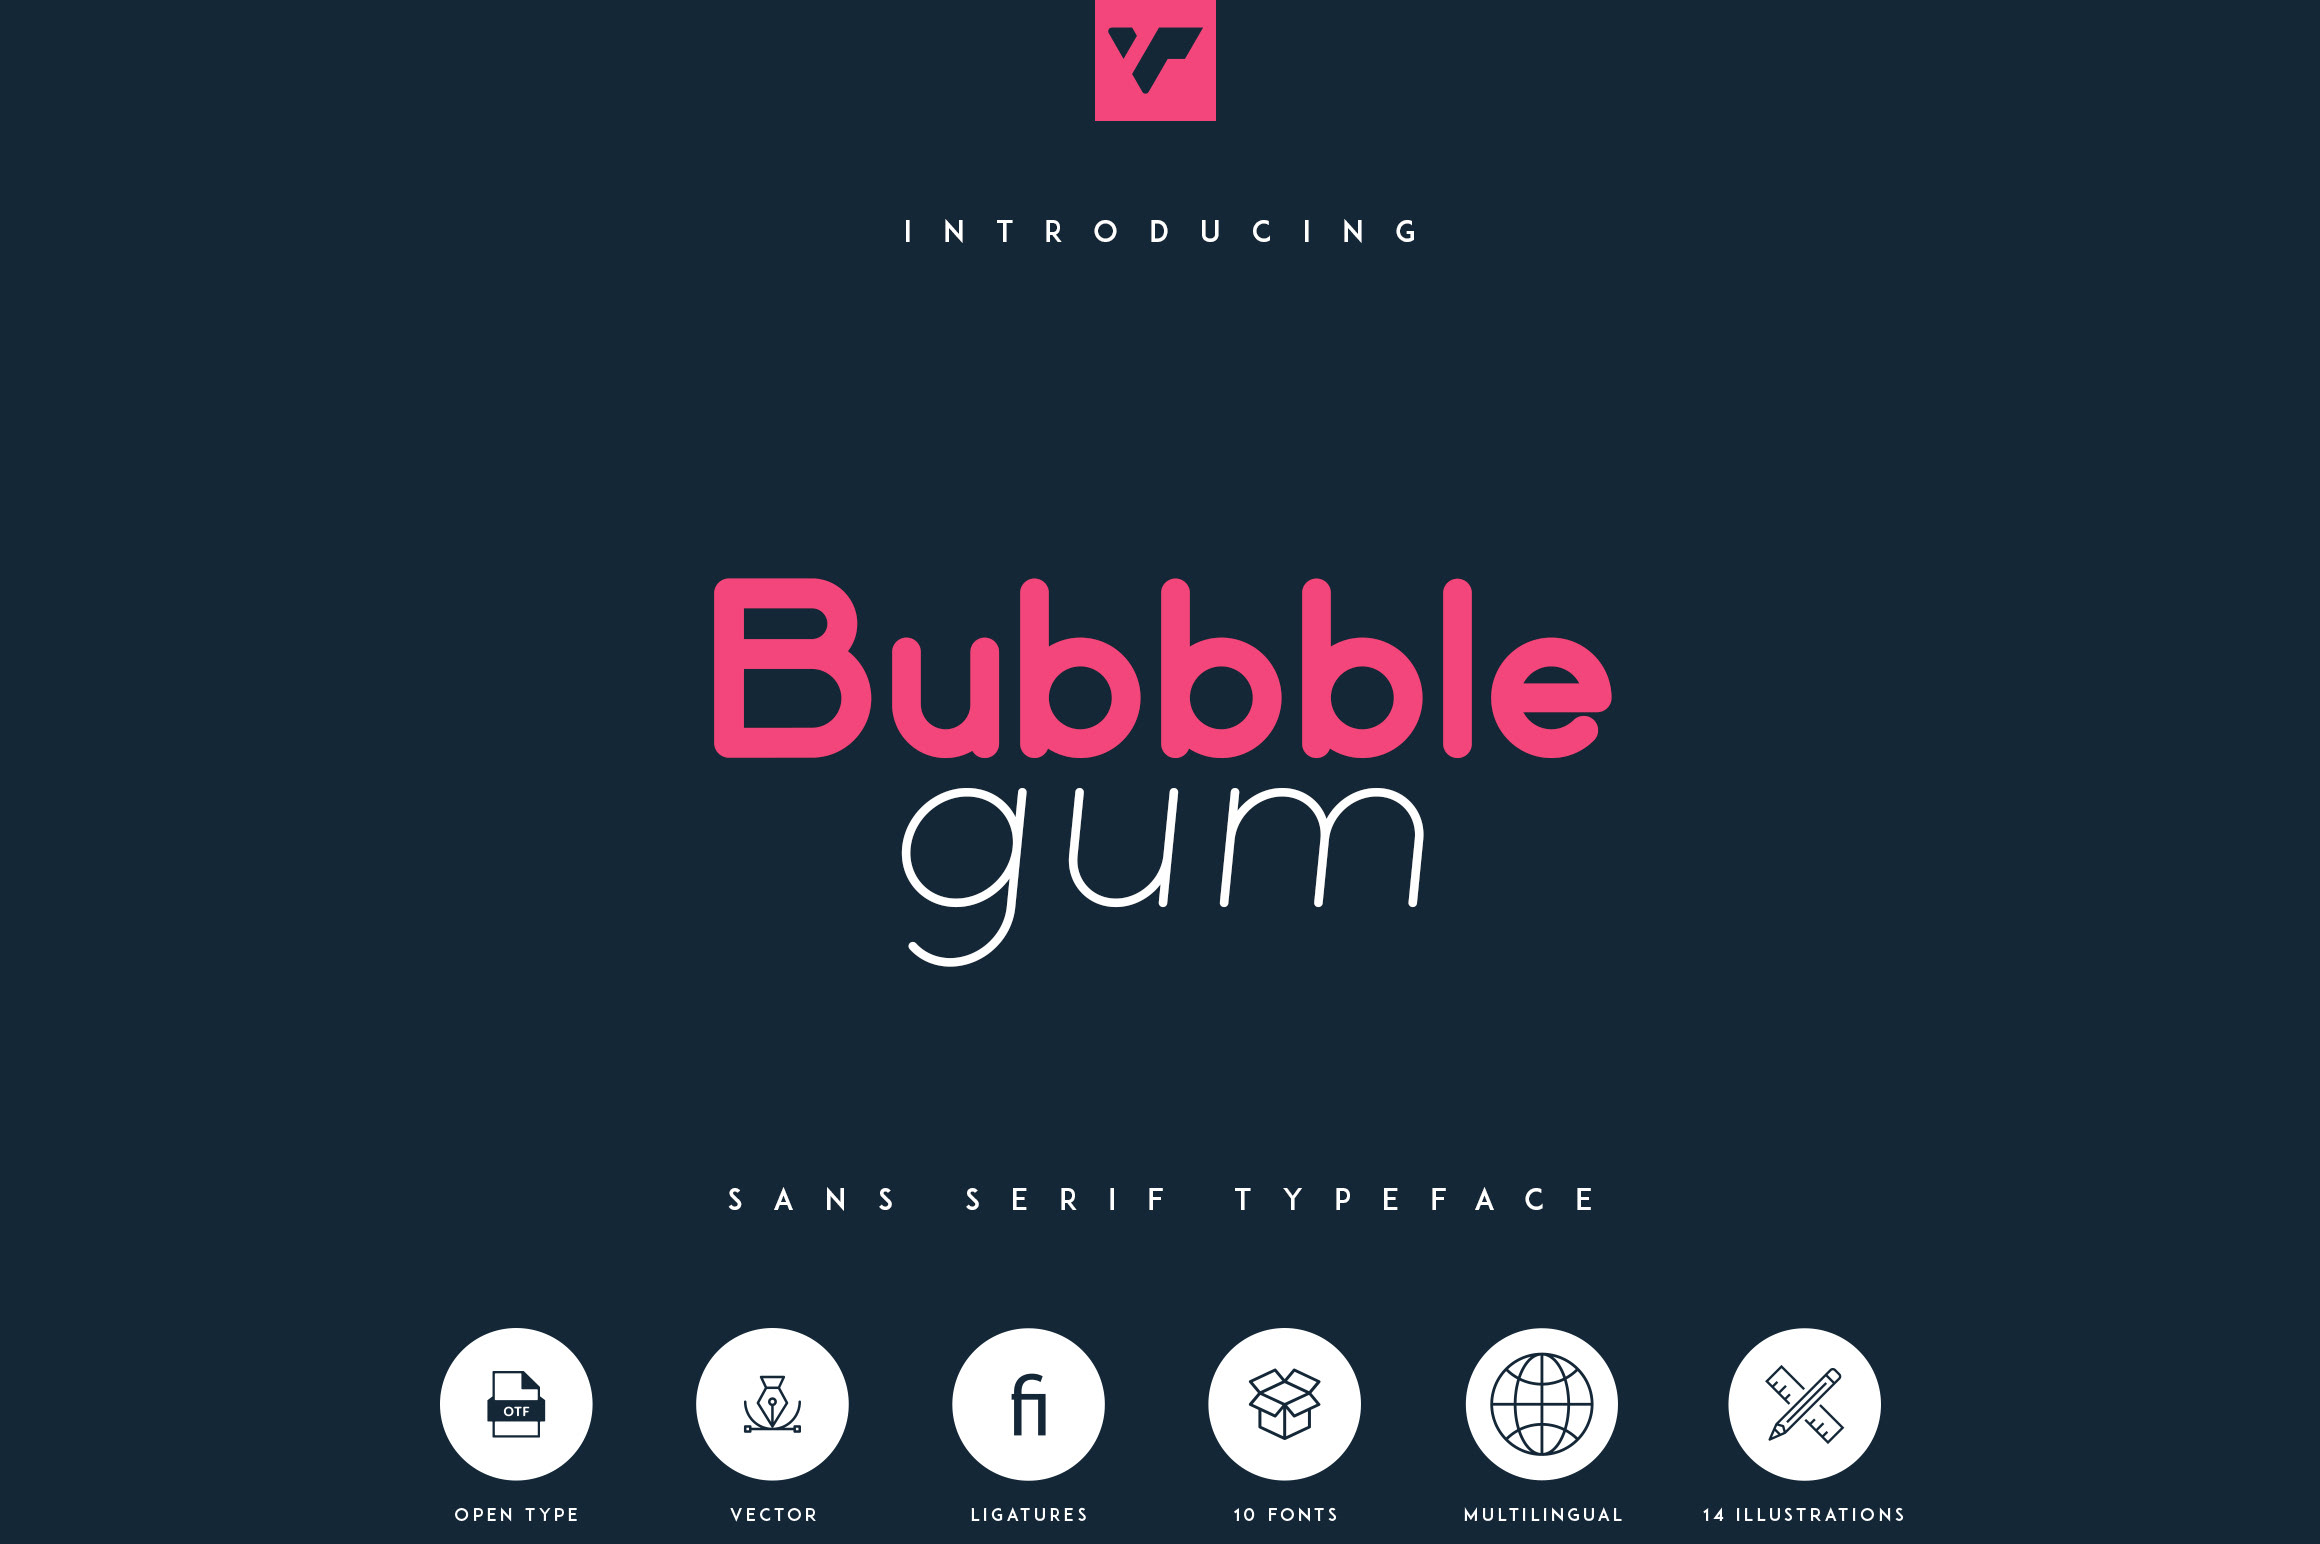 Bubbble Gum - sans serif typeface rendition image